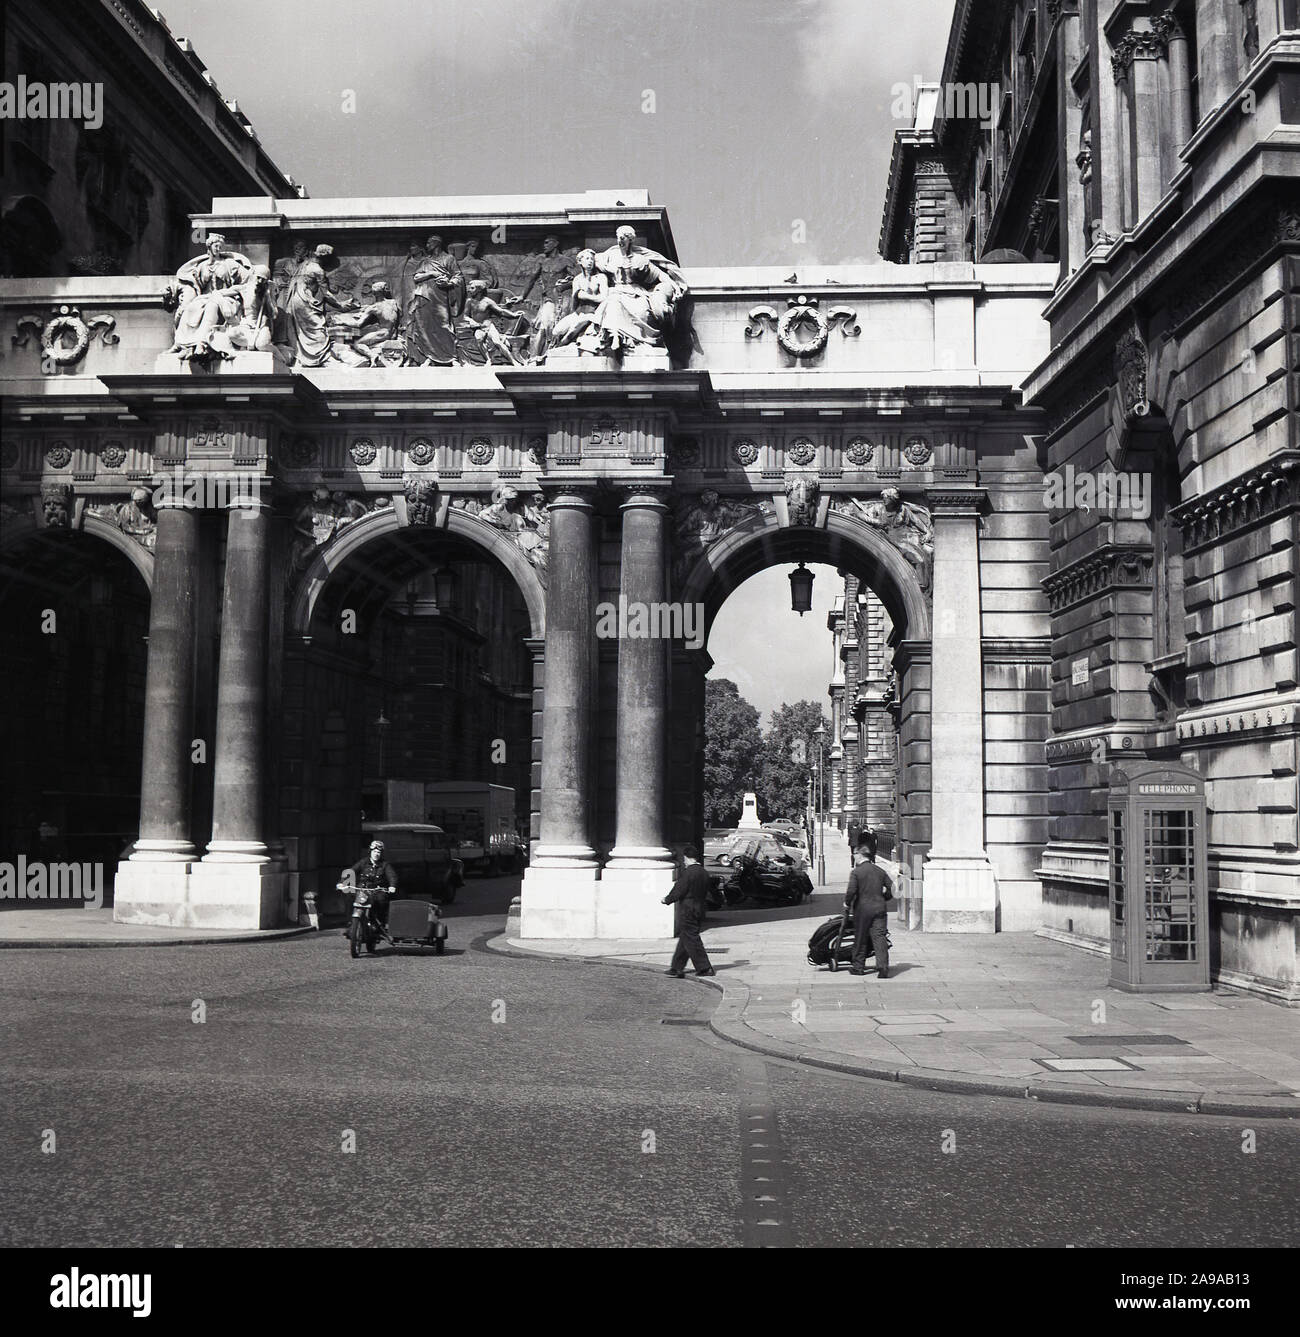 1950, historische, Motorrad mit Beiwagen unterhalb der mittleren Bogen am Triple Arch am King Charles Street, Whitehall, London, England, UK. Die Brücke verbindet es öffentlichen Gebäuden. Stockfoto